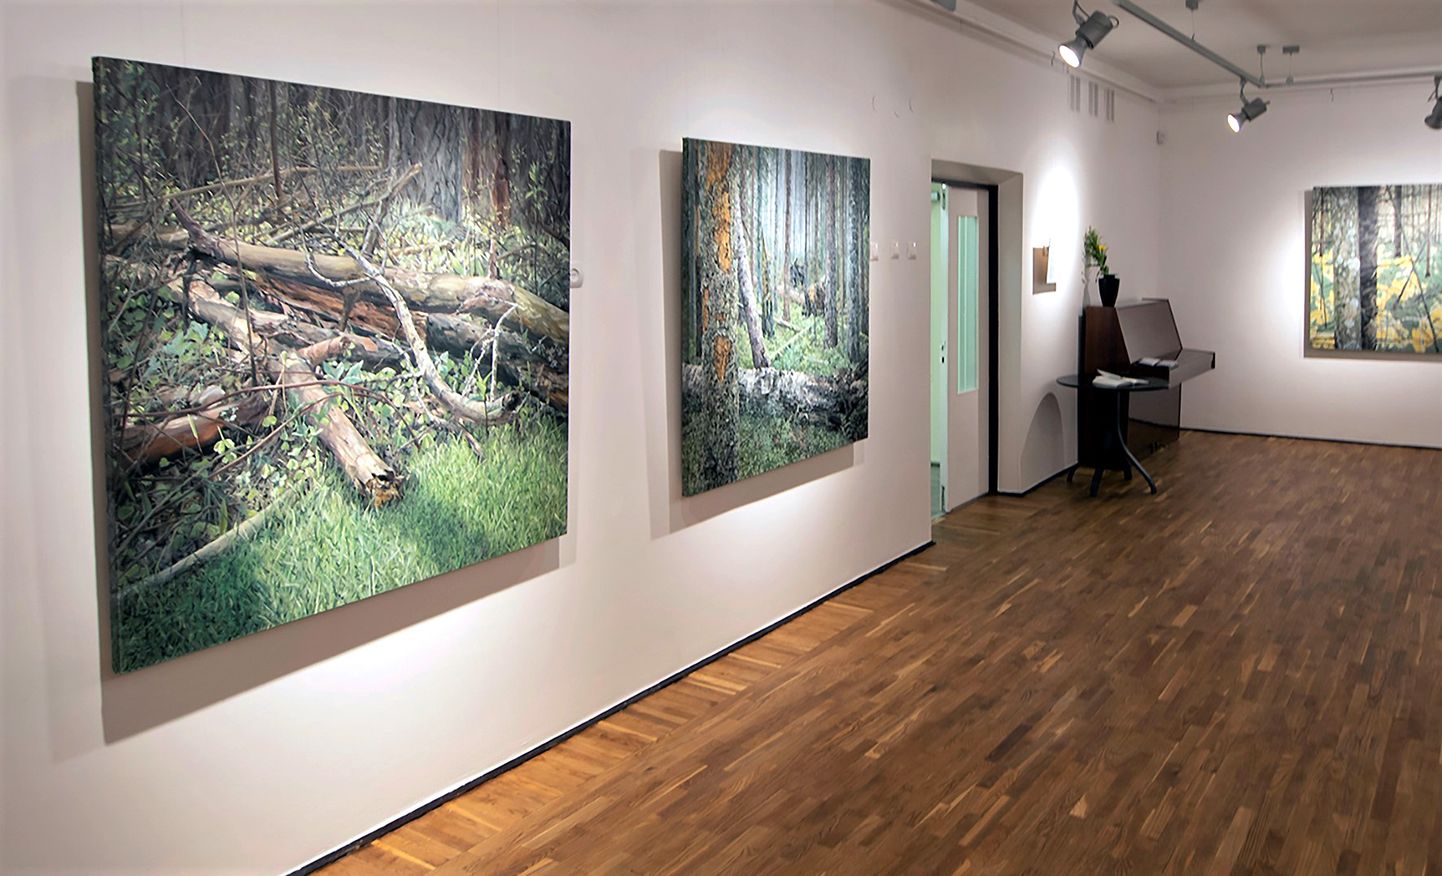 Выставка картин Яне Ремм "Rägastikud, Metsik paradiis, Metsamorfoos ja mnt" проработает в галерее Йыхвиской художественной школы до 26 февраля.